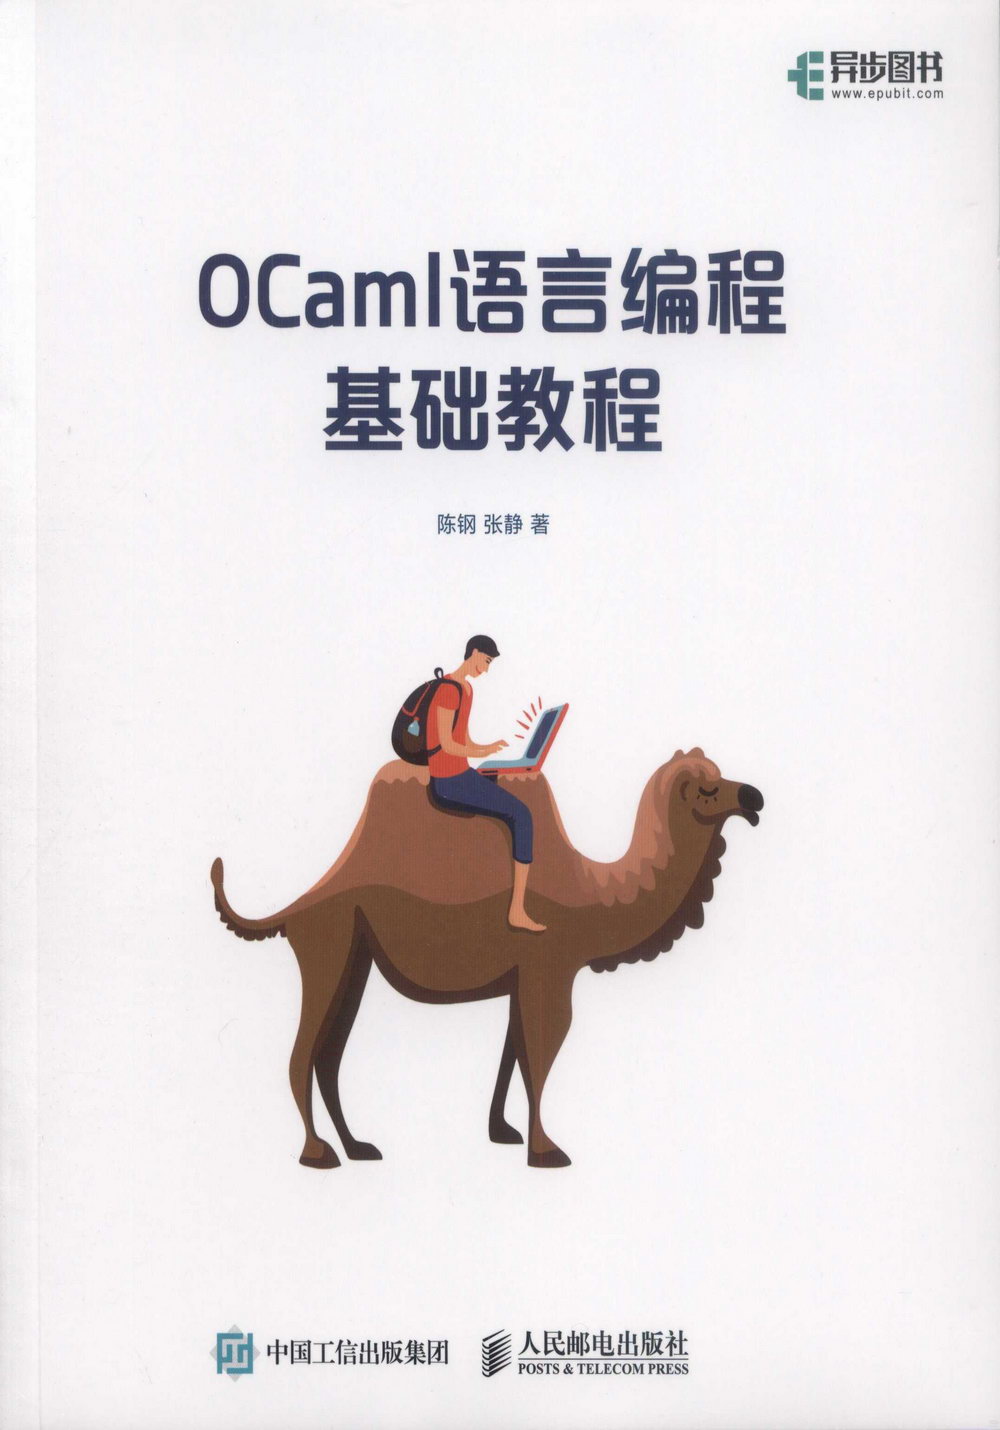 OCaml語言編程基礎教程